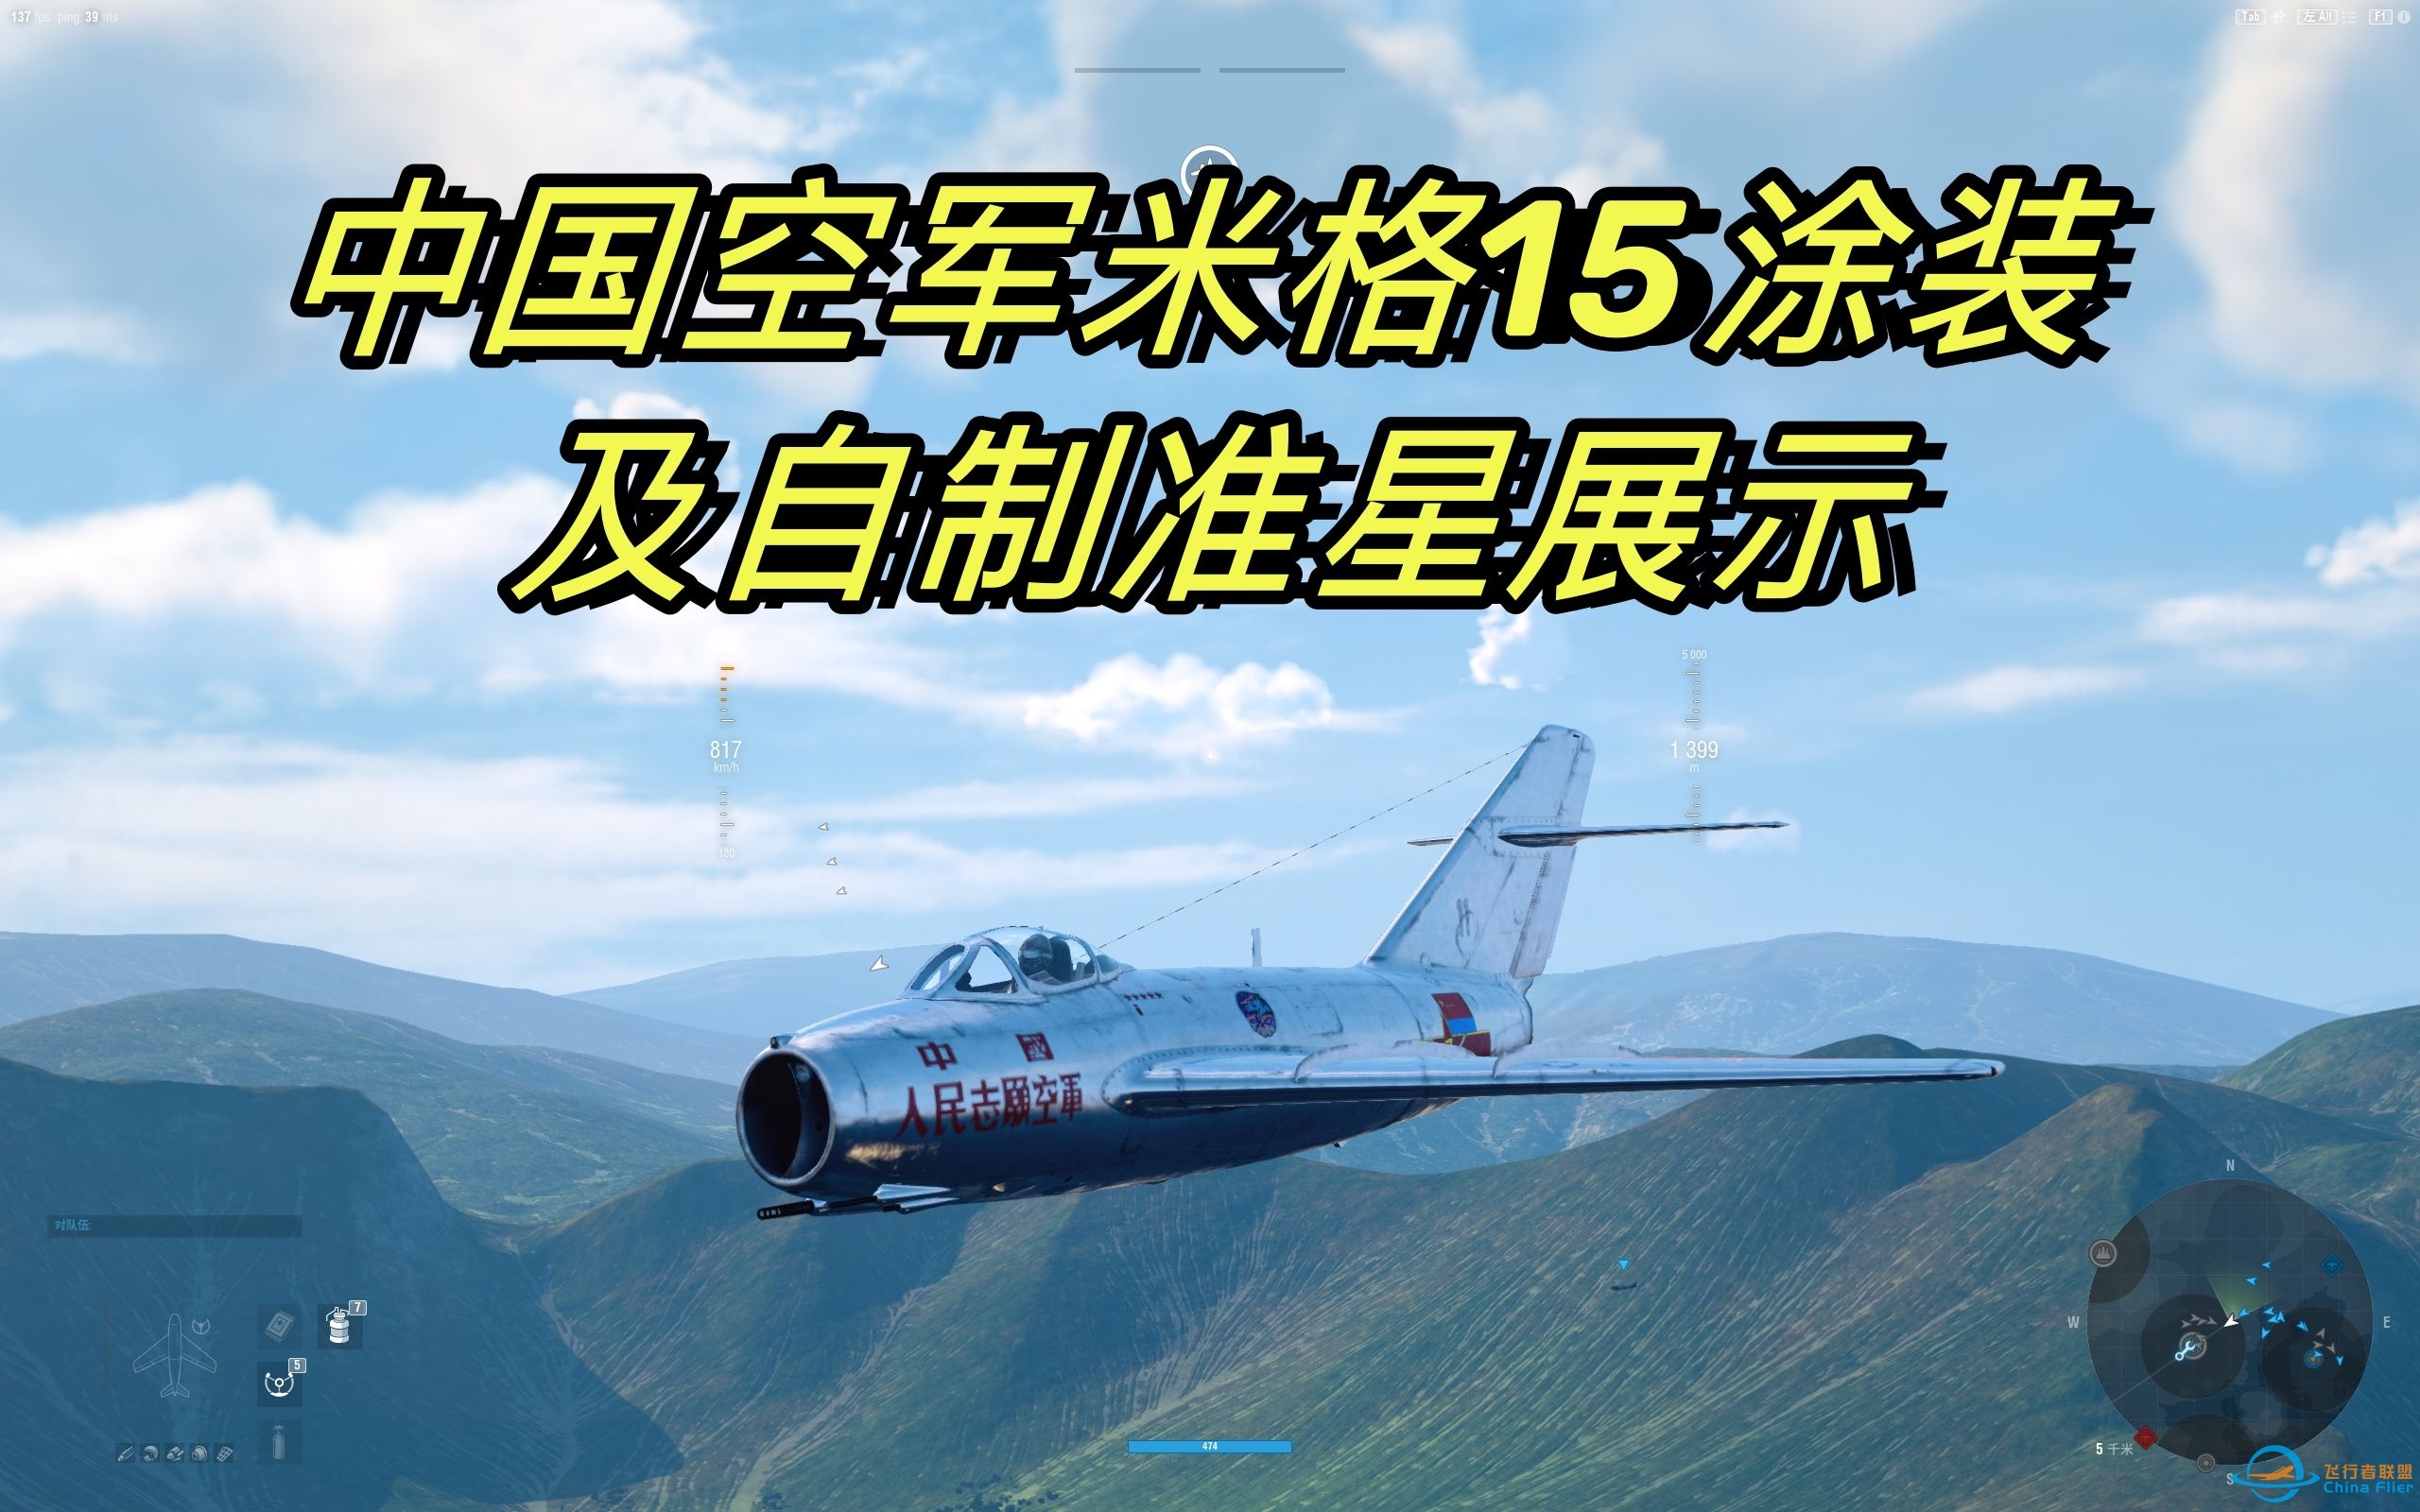 [战机世界]中国空军米格15涂装及自制仿喷火战斗机准星展示-38 